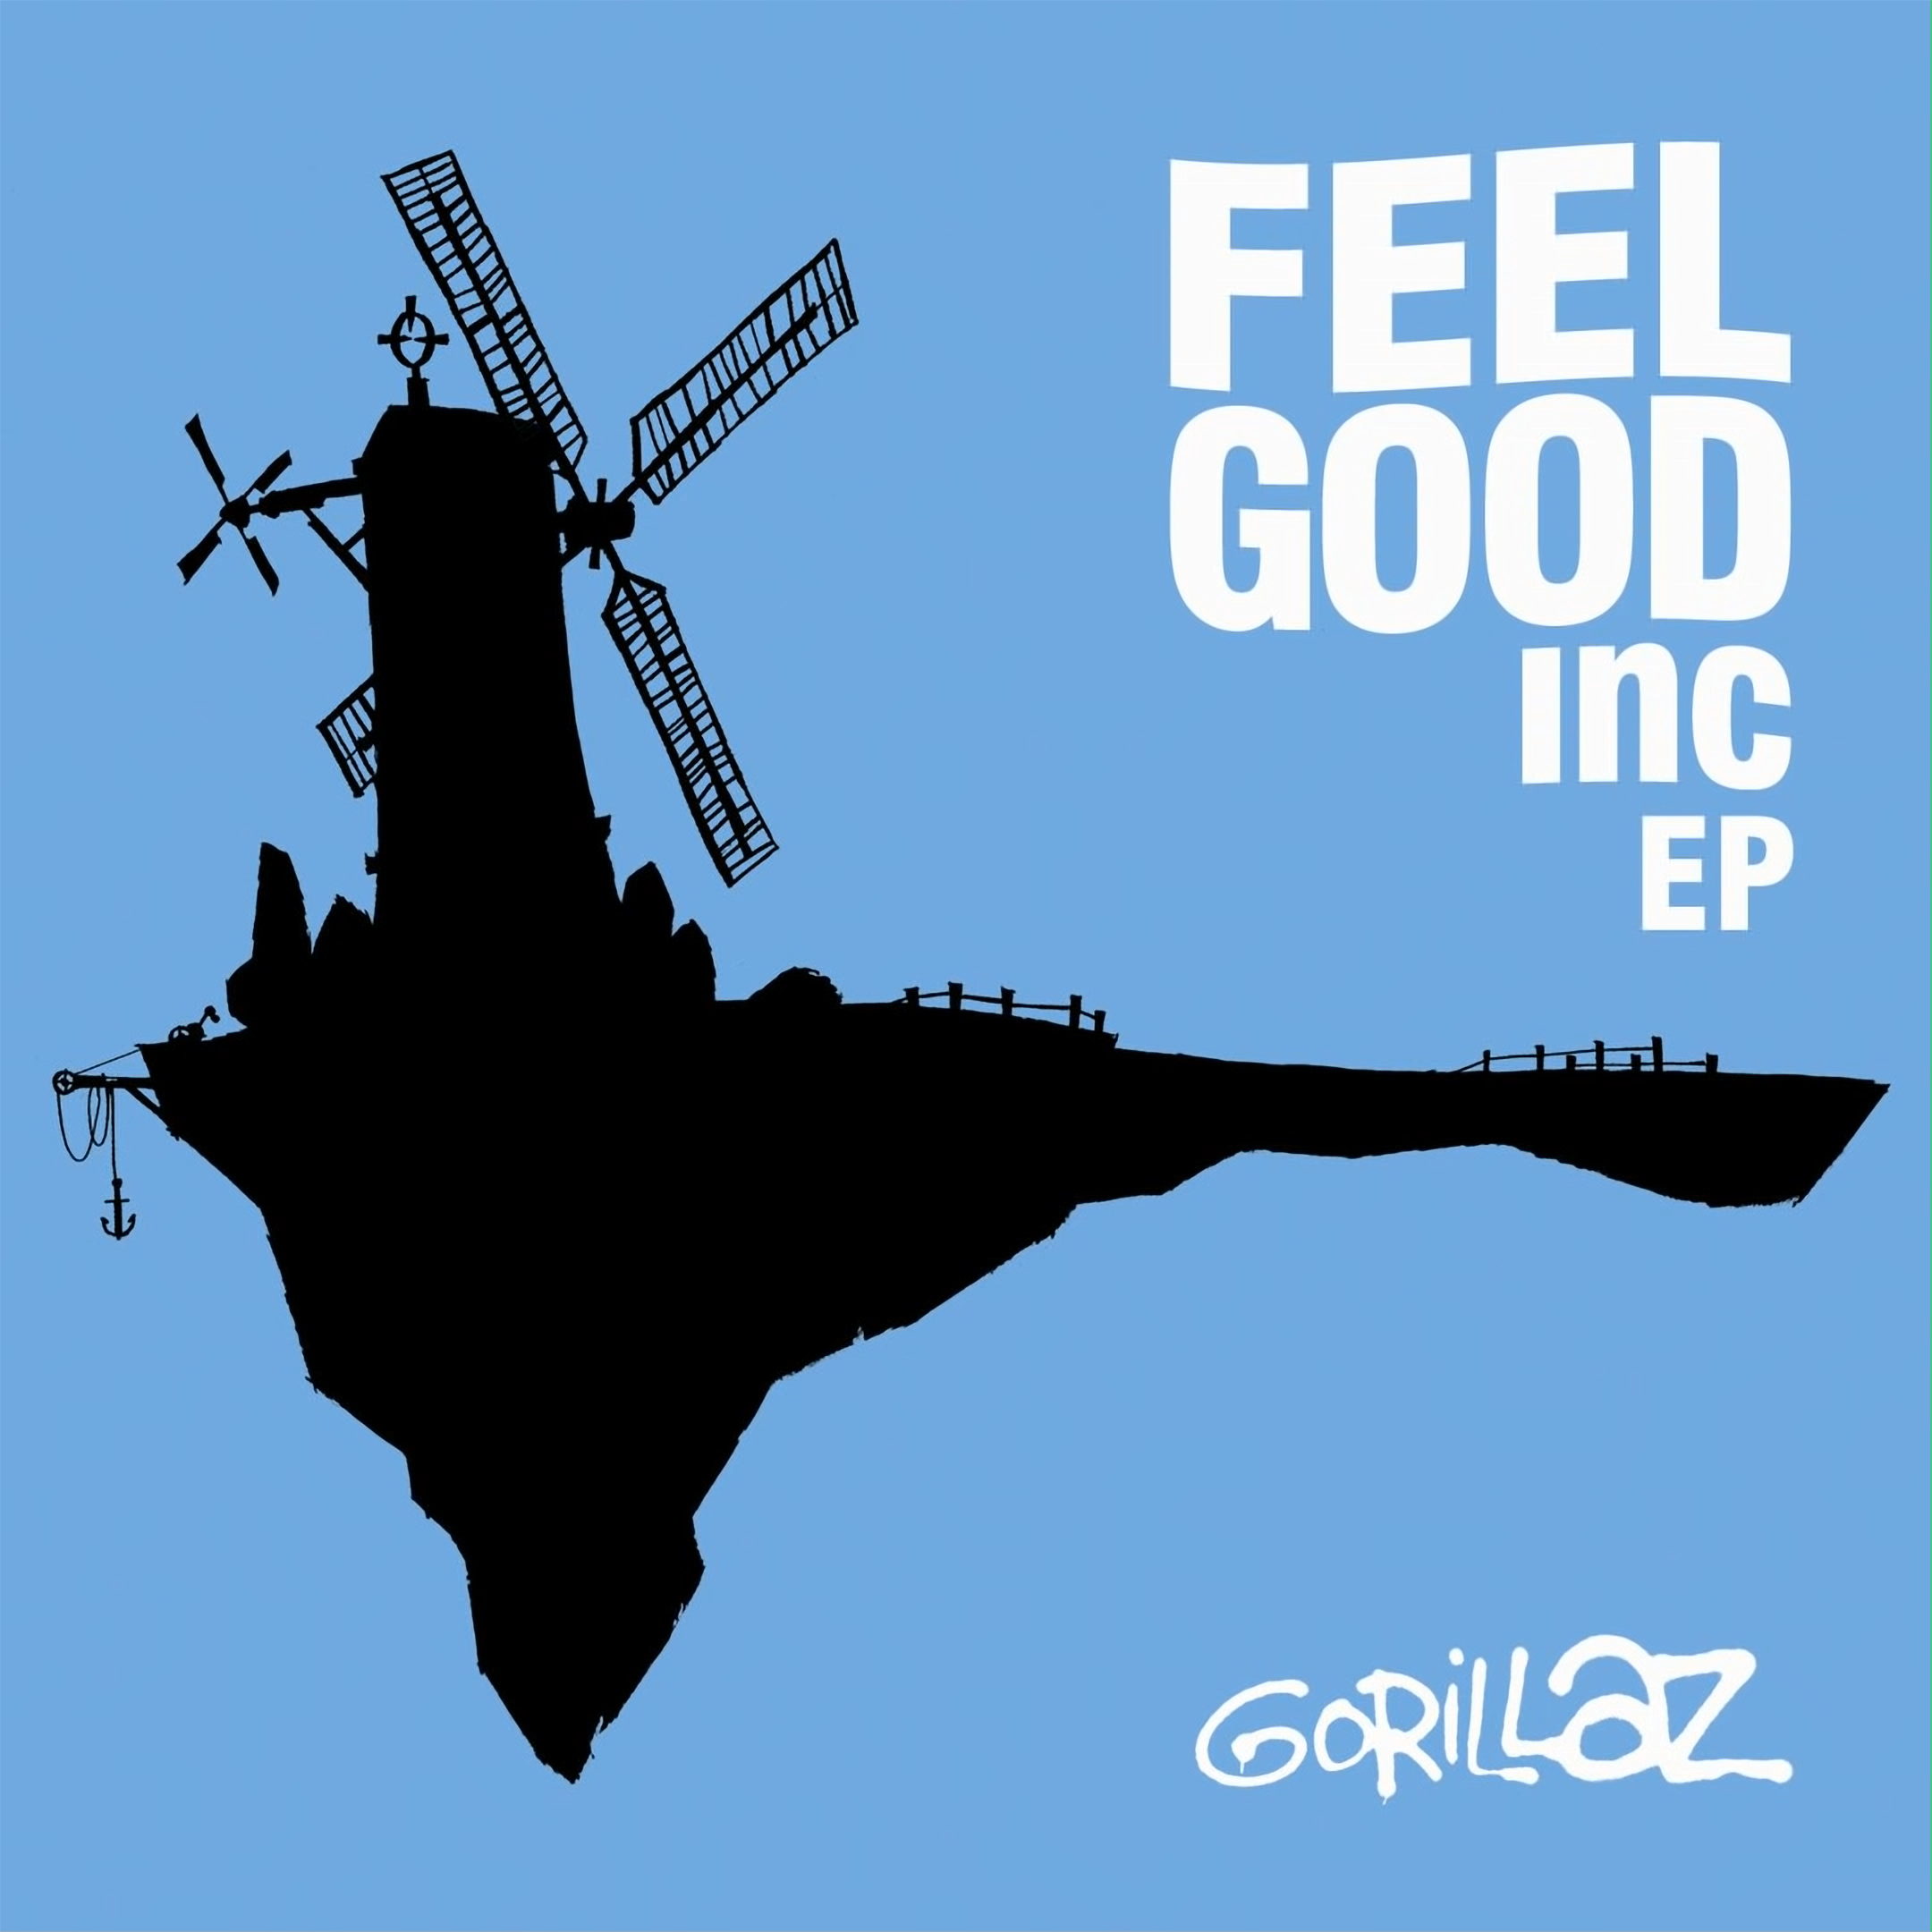 Feel good drink. Feel good Inc. Gorillaz feel good Inc. Feel good Inc обложка. Gorillaz feel good Inc обложка.